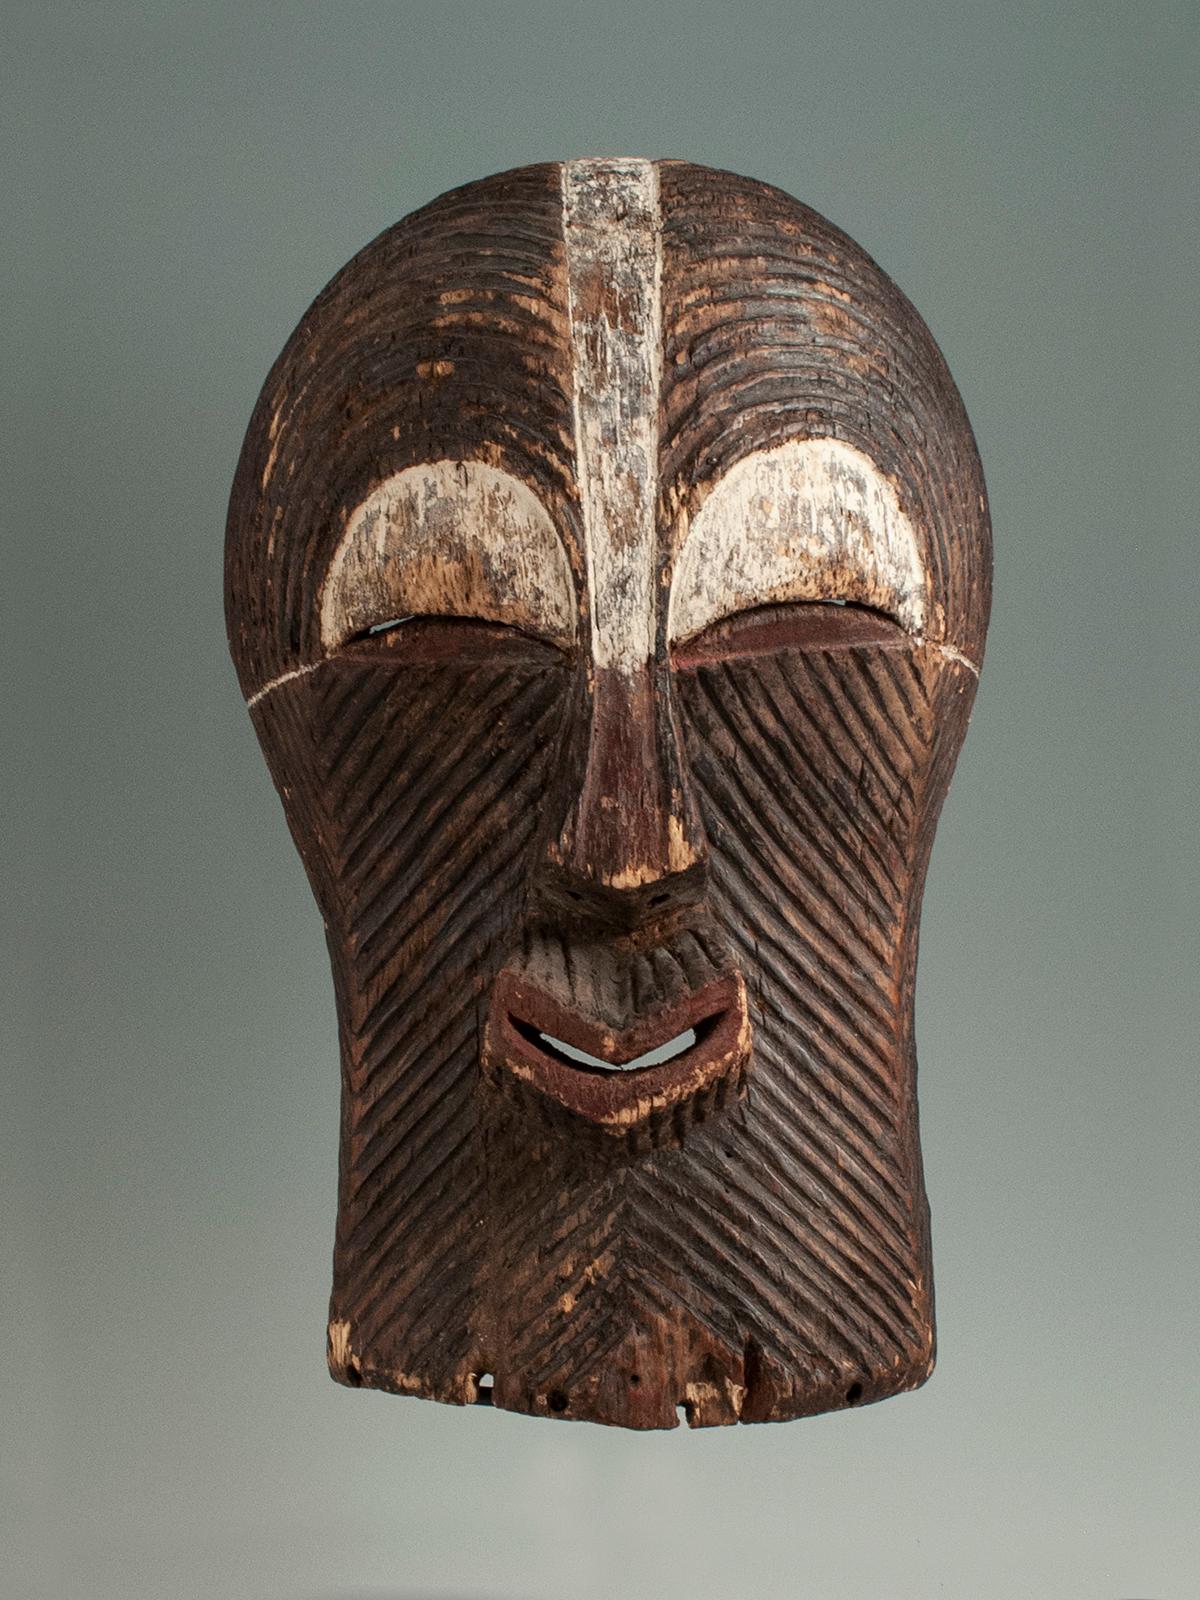 Diese grafische Songye-Kifwebe-Maske hat feine geschnitzte Linien, die über den Augen geschwungen sind, und diagonale Linien, die in klassischer Kifwebe-Form von Nase und Mund ausgehen. Maske aus der Mitte des 20. Jahrhunderts aus der Demokratischen